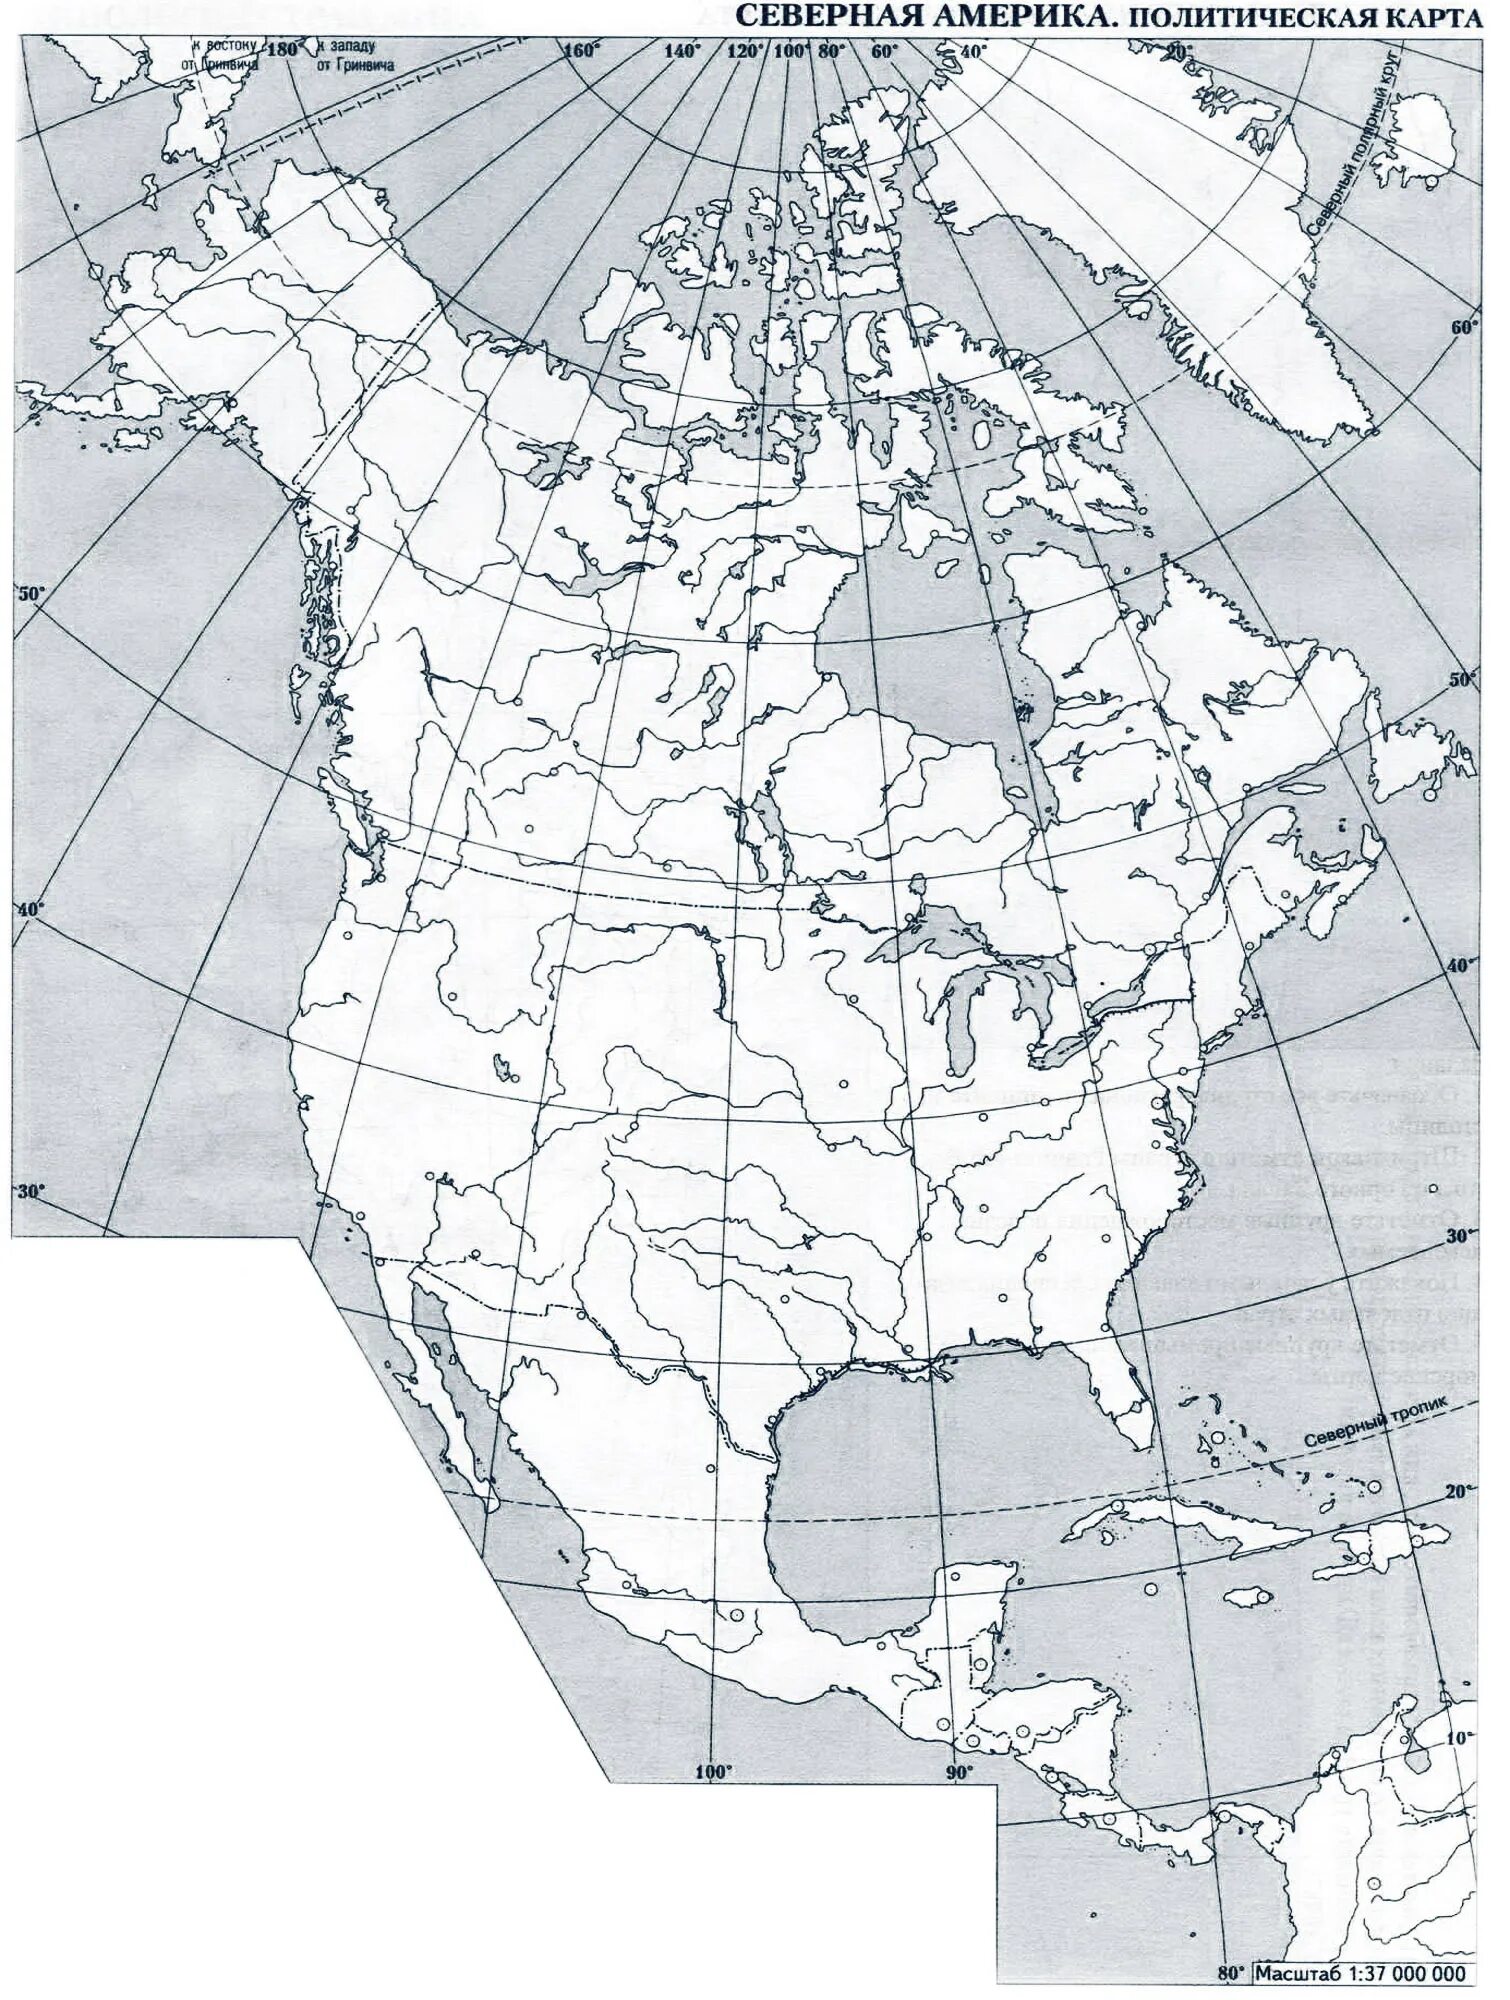 Северная америка контрольная работа 7 класс. Физическая карта Северной Америки контурная карта. Пустая карта Северной Америки. Карта Северной Америки контурная карта 7 класс. Политическая контурная карта Северной Америки.